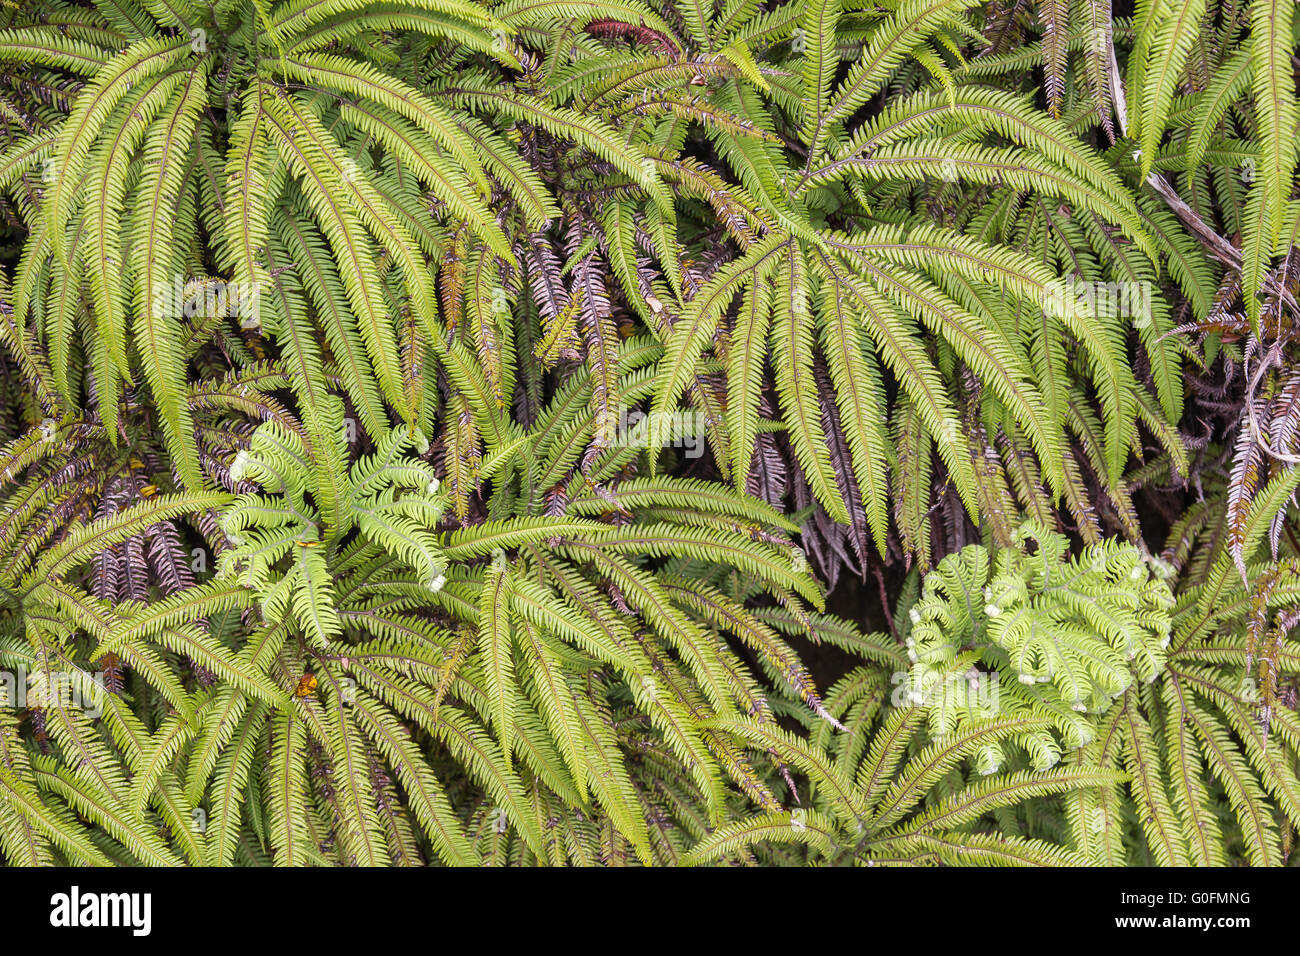 Umbrella fern, sticherus sp., New Zealand Stock Photo